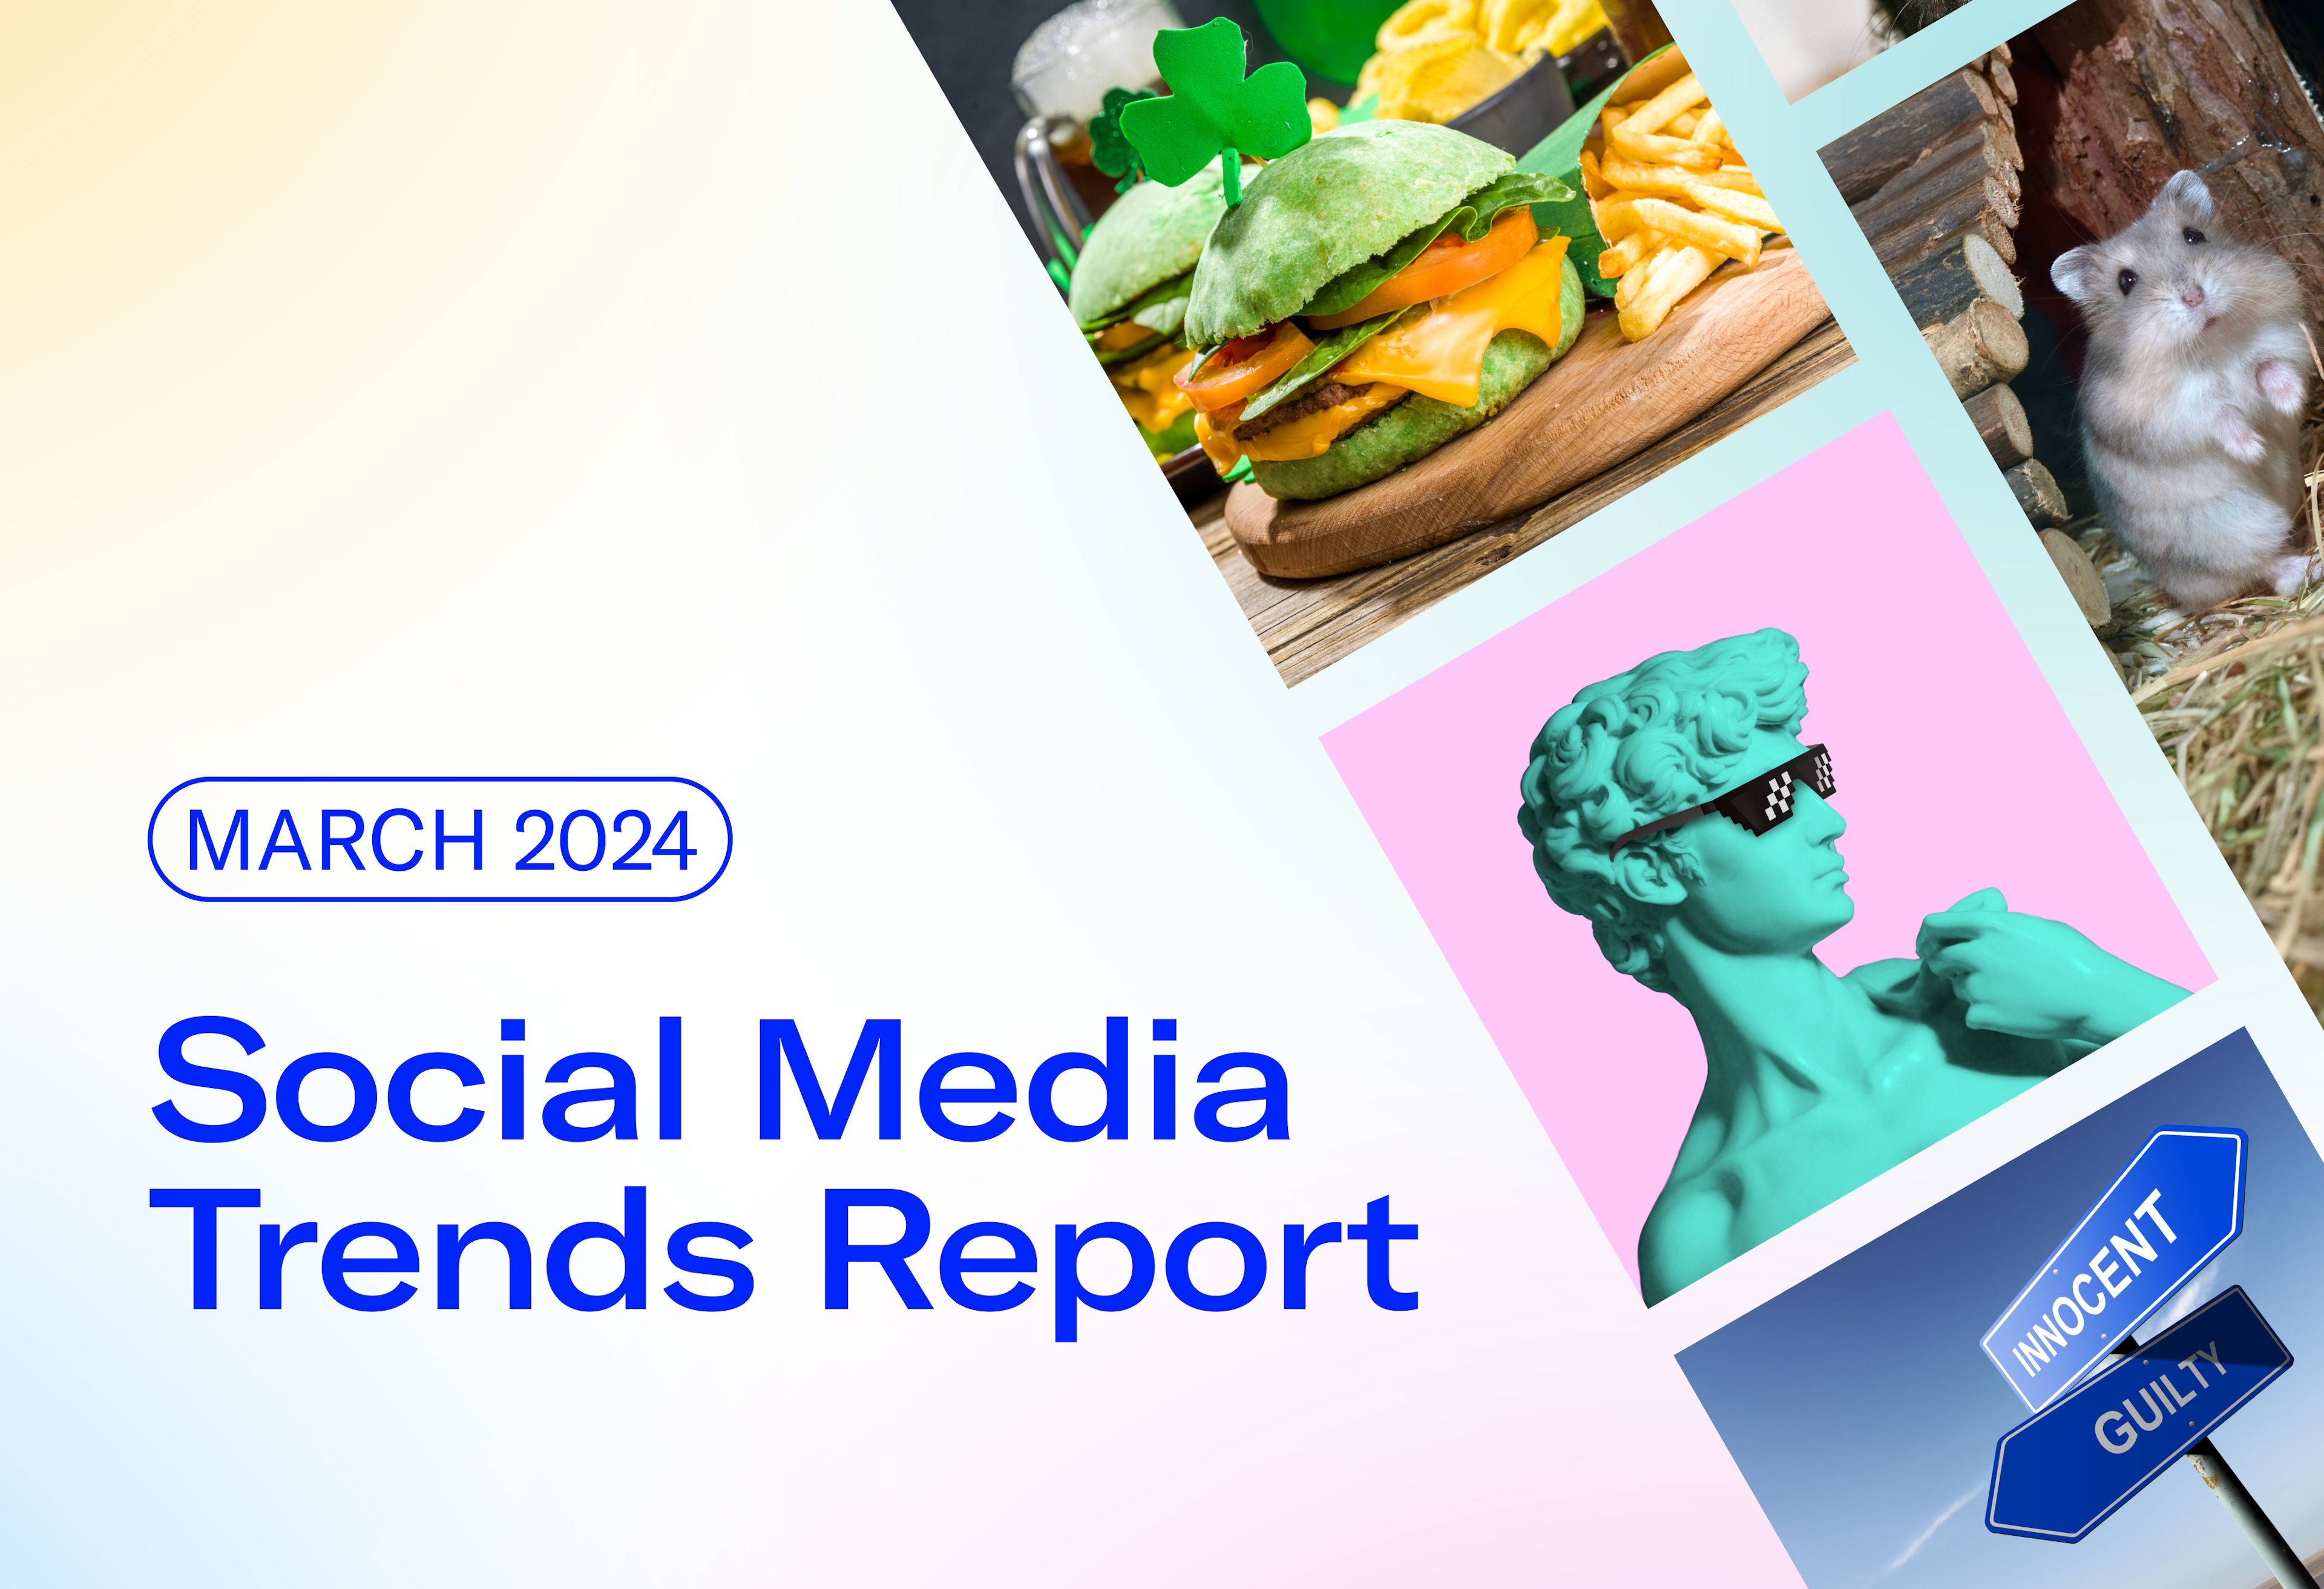 March 2024 Social Media Trends